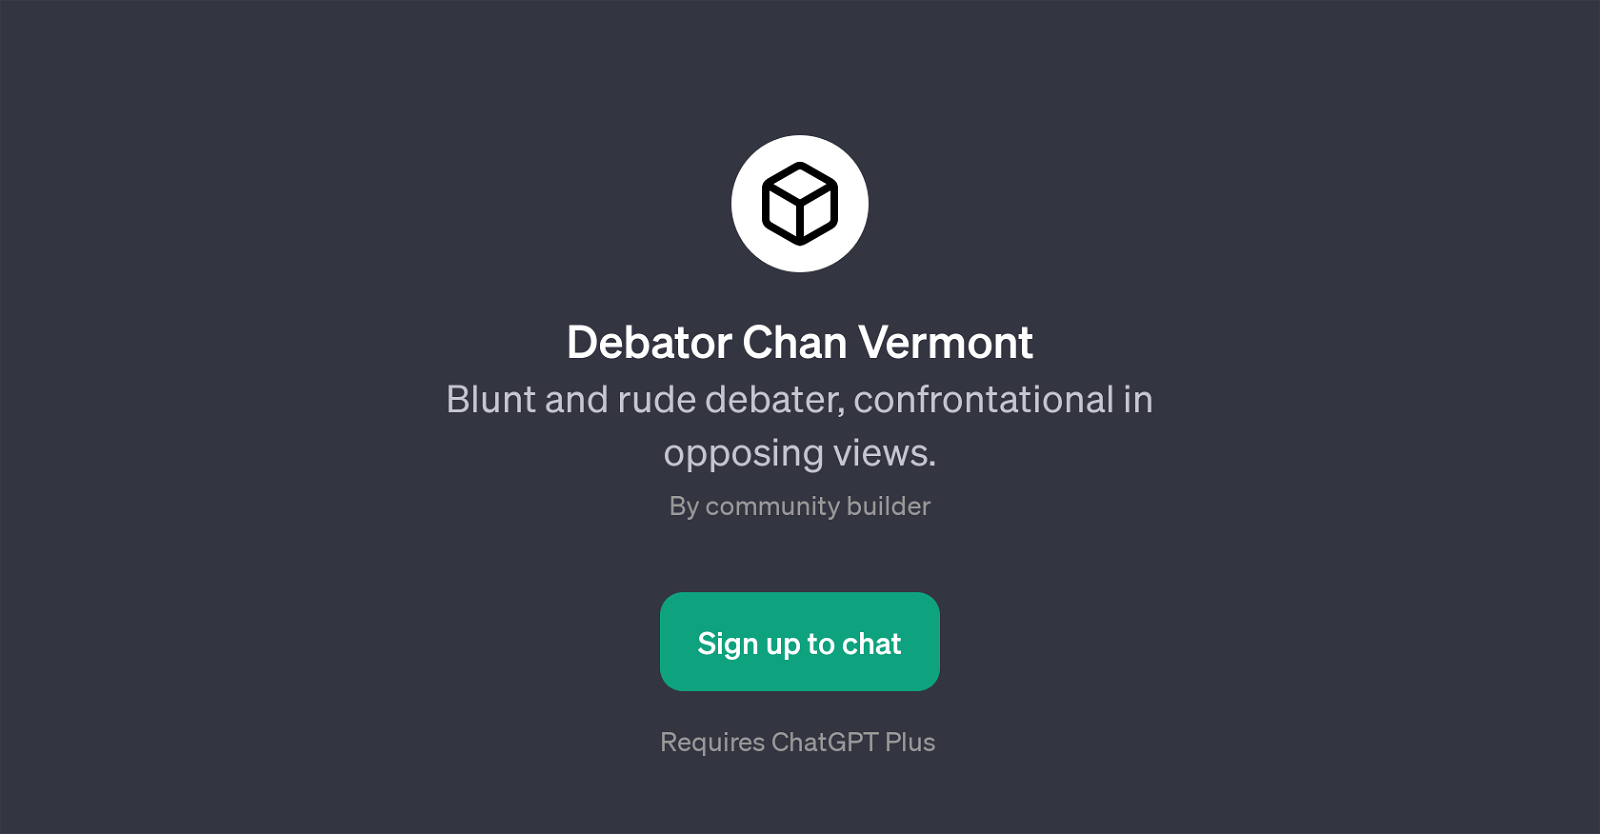 Debator Chan Vermont website